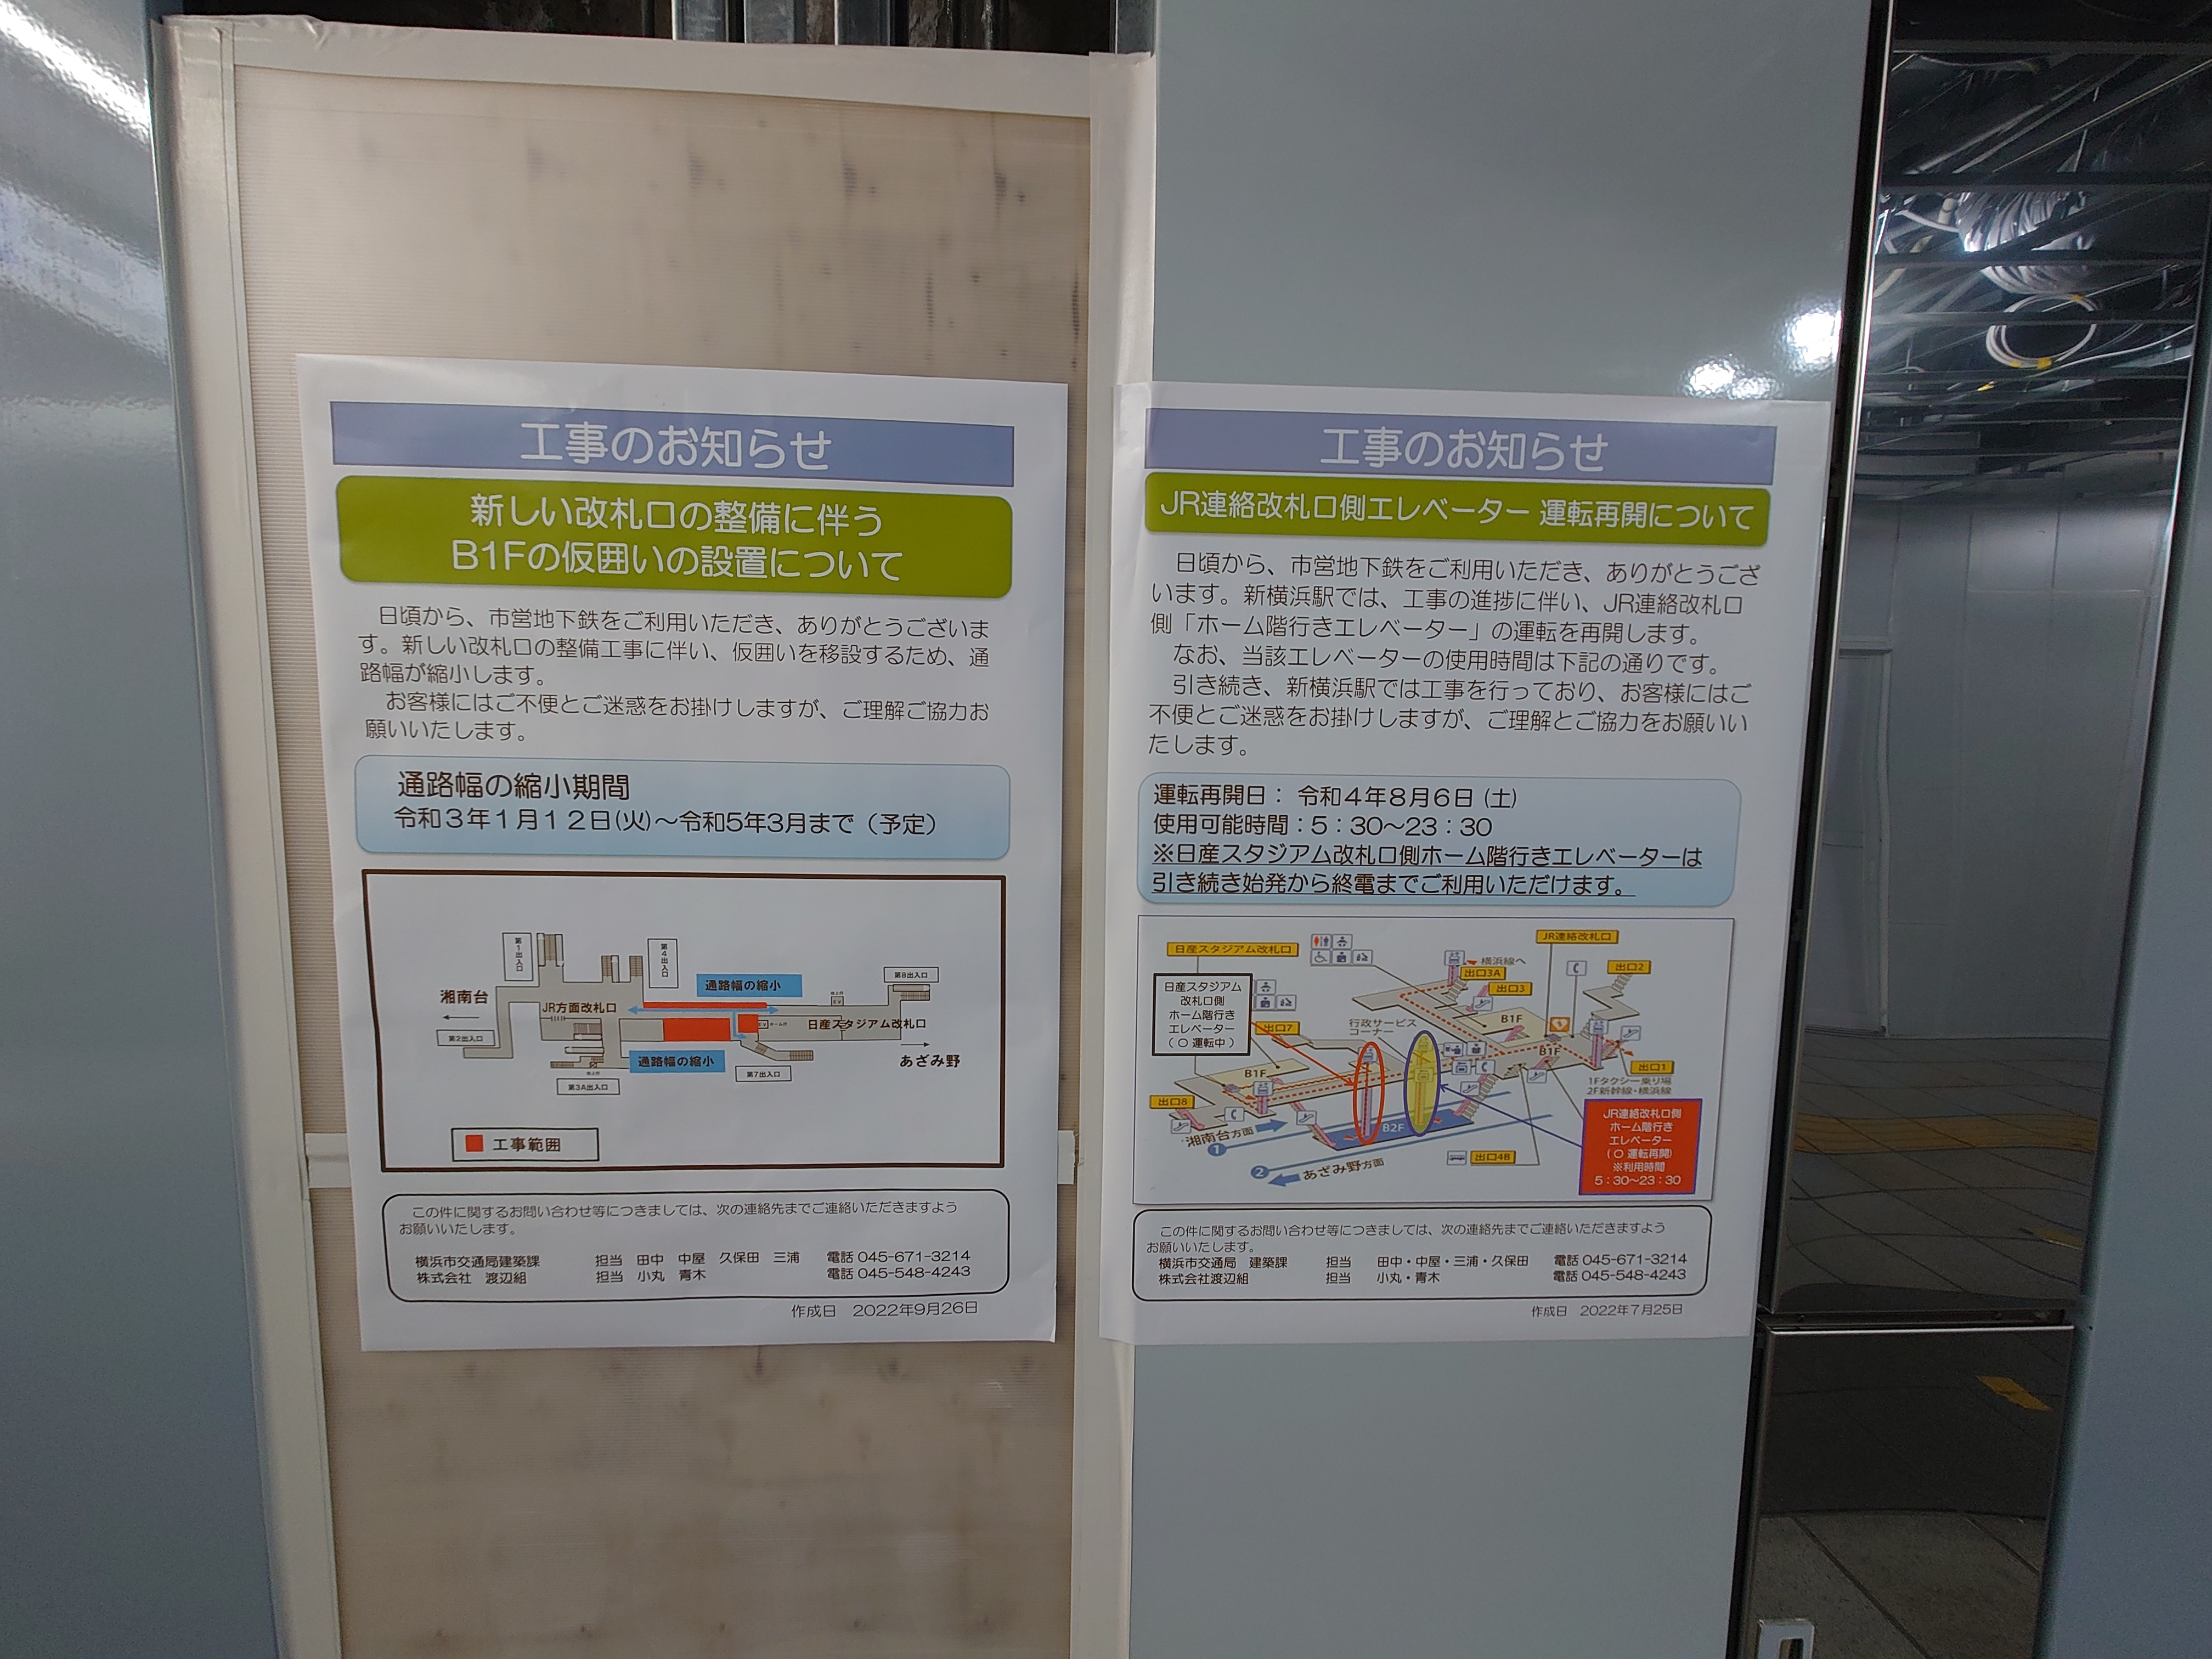 新横浜駅地下工事風景４（新設改札口のイラスト、案内図、地図）